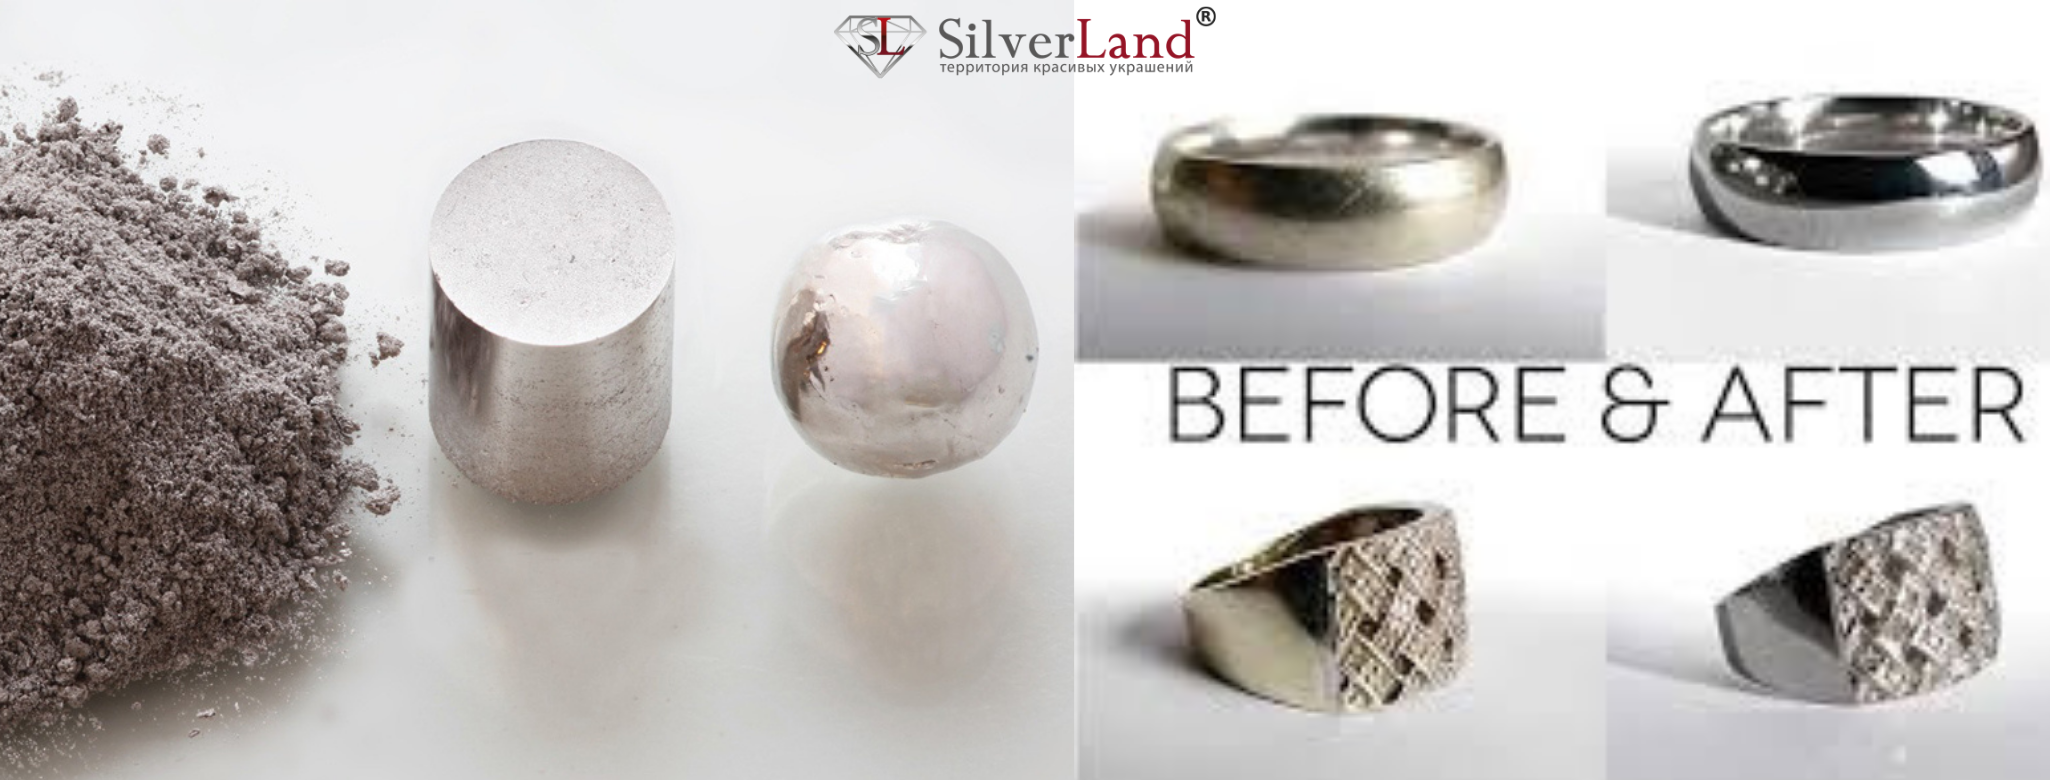 Какое серебро лучше светлое или темное - интернет-магазин ювелирныхукрашений silverland.ua